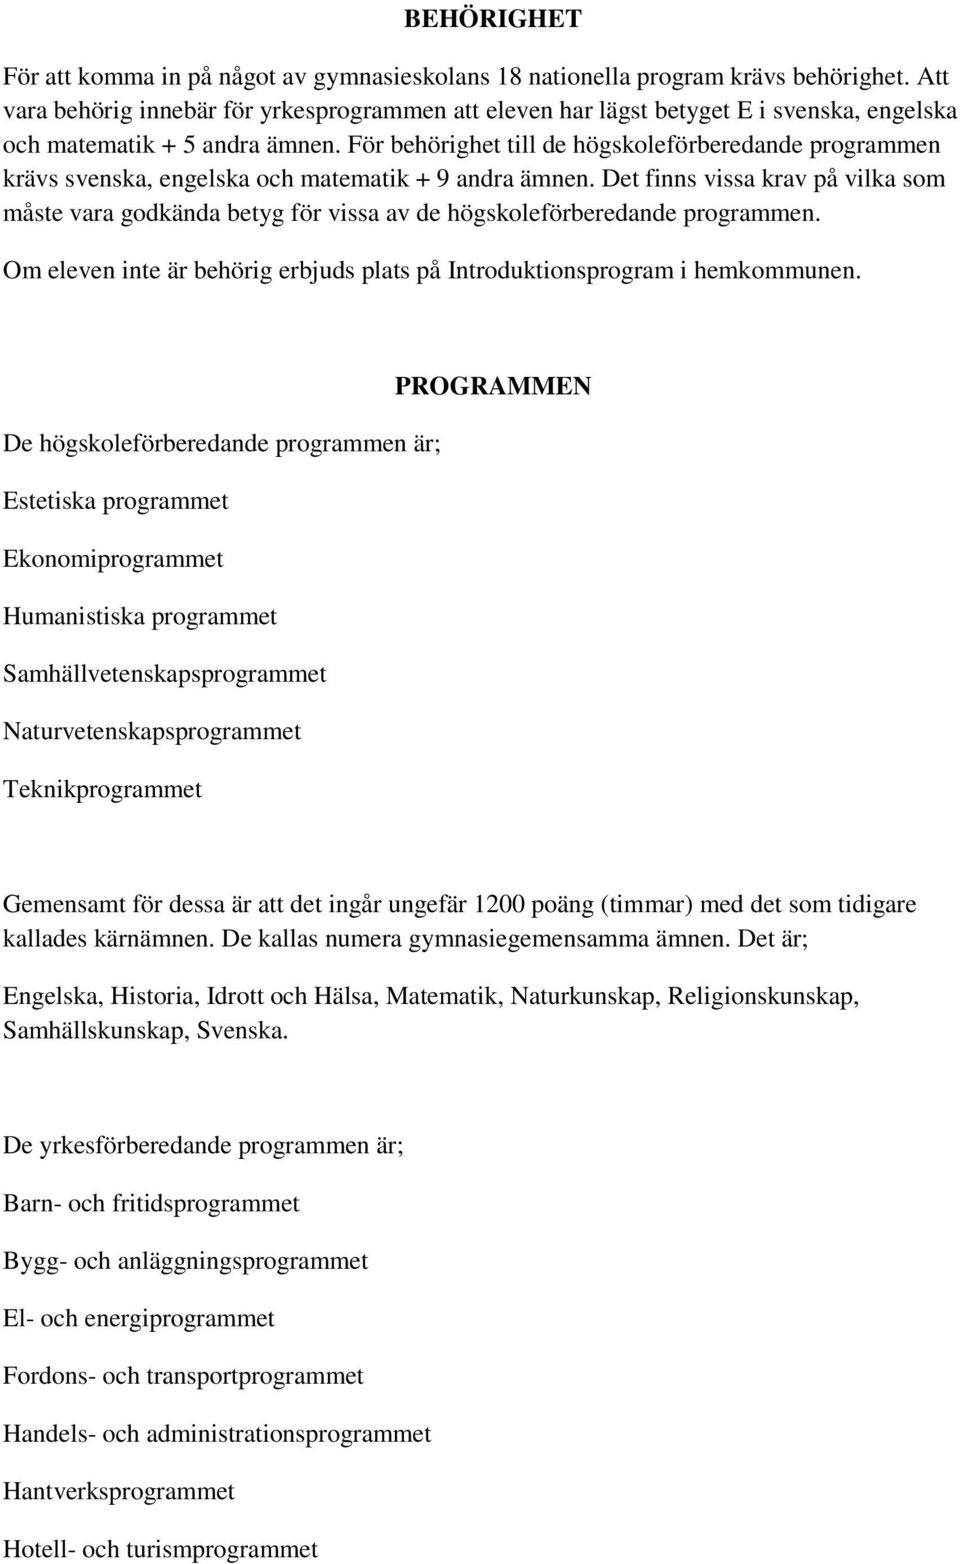 För behörighet till de högskoleförberedande programmen krävs svenska, engelska och matematik + 9 andra ämnen.